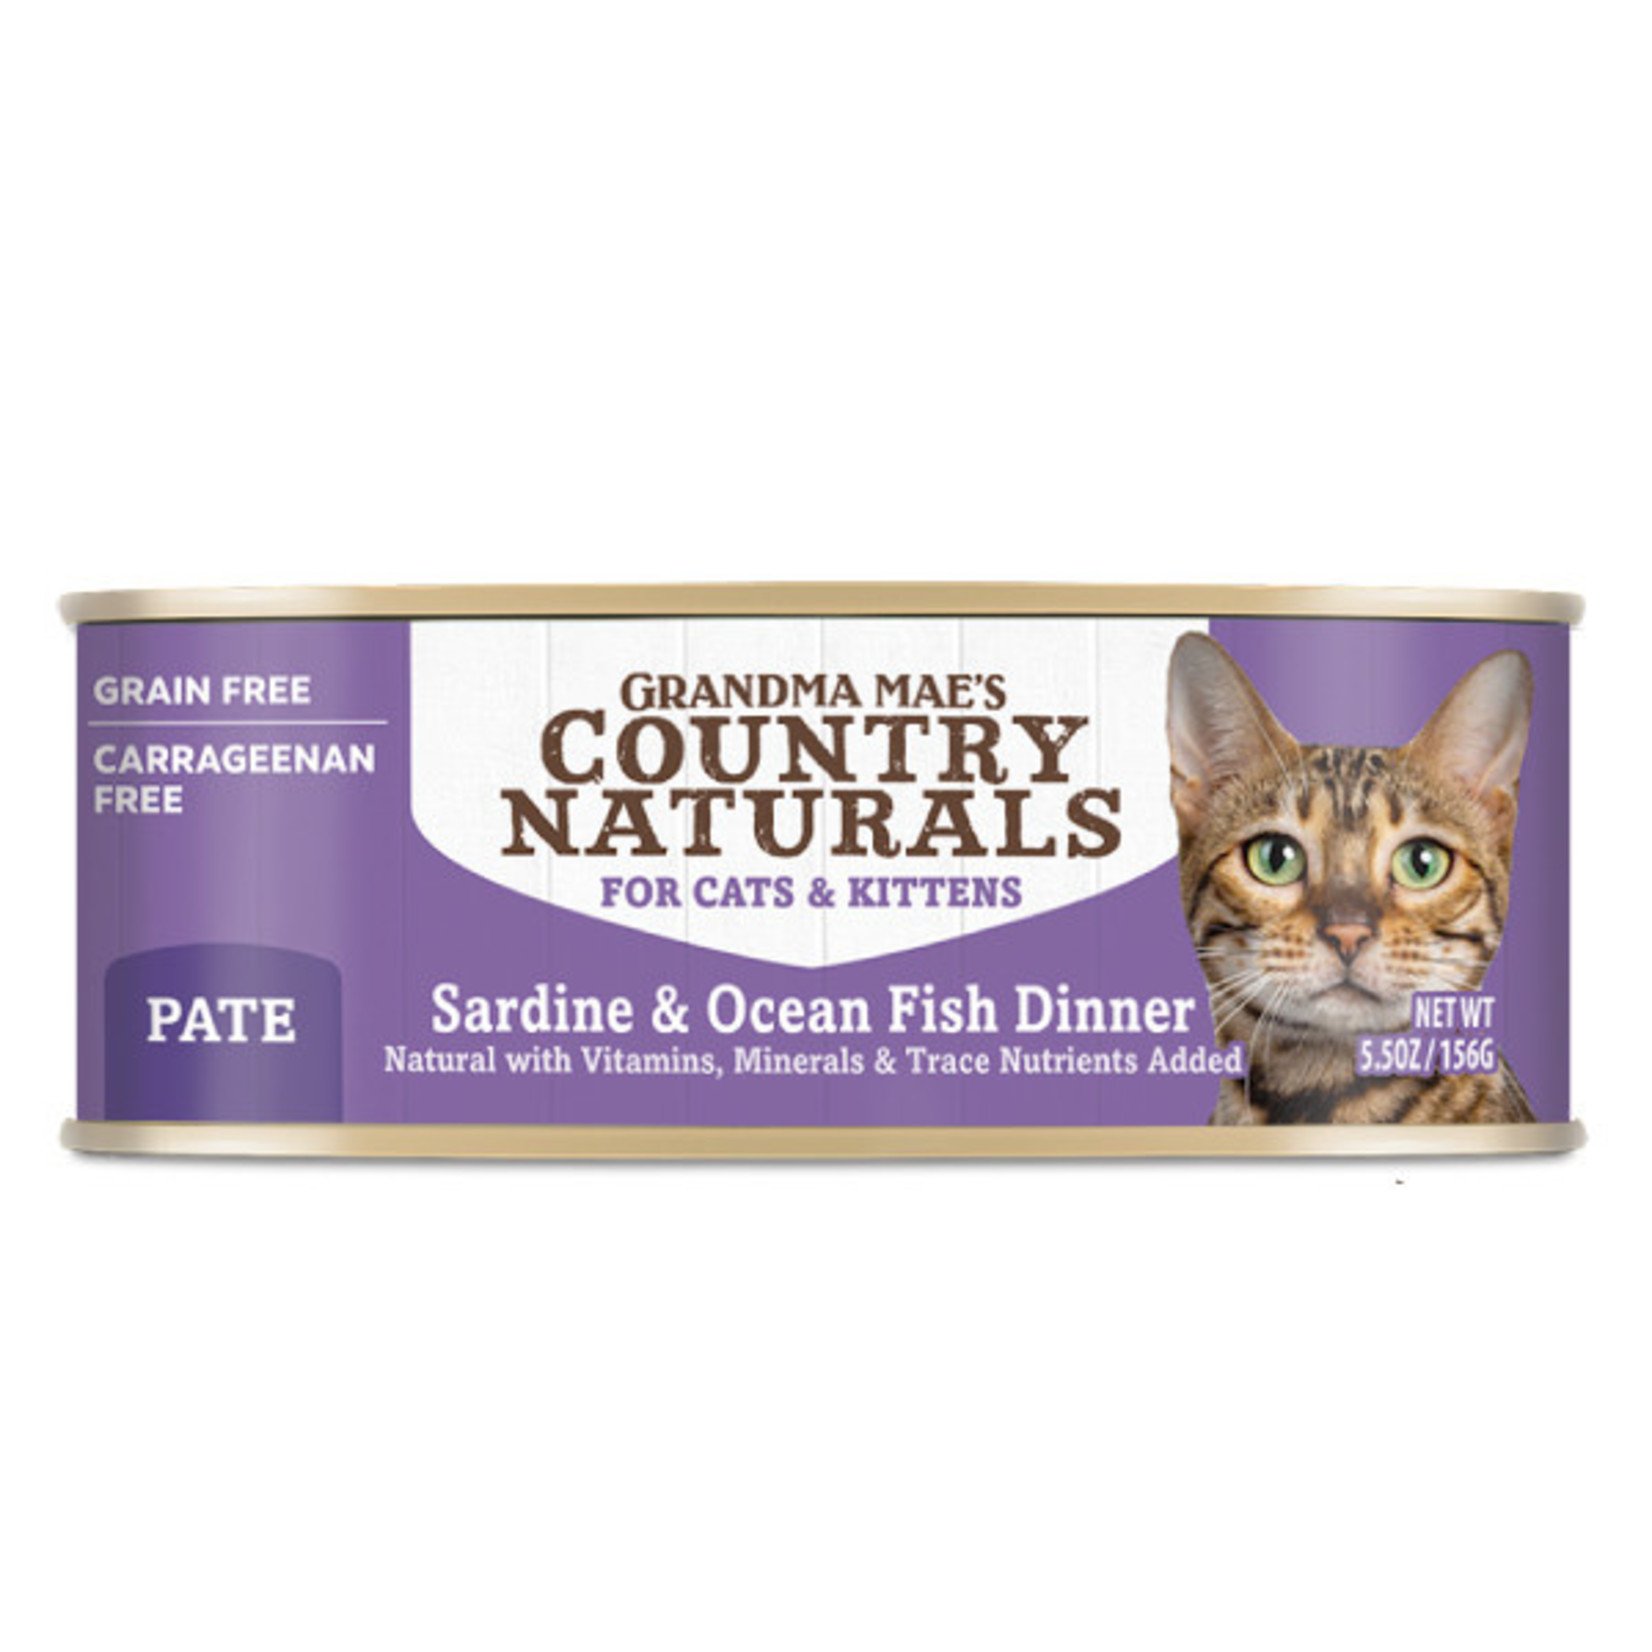 Grandma Maes Country Naturals Grandma Mae's Country Naturals Wet Cat Food Sardine and Ocean Fish Dinner Pate 5.5oz Grain Free